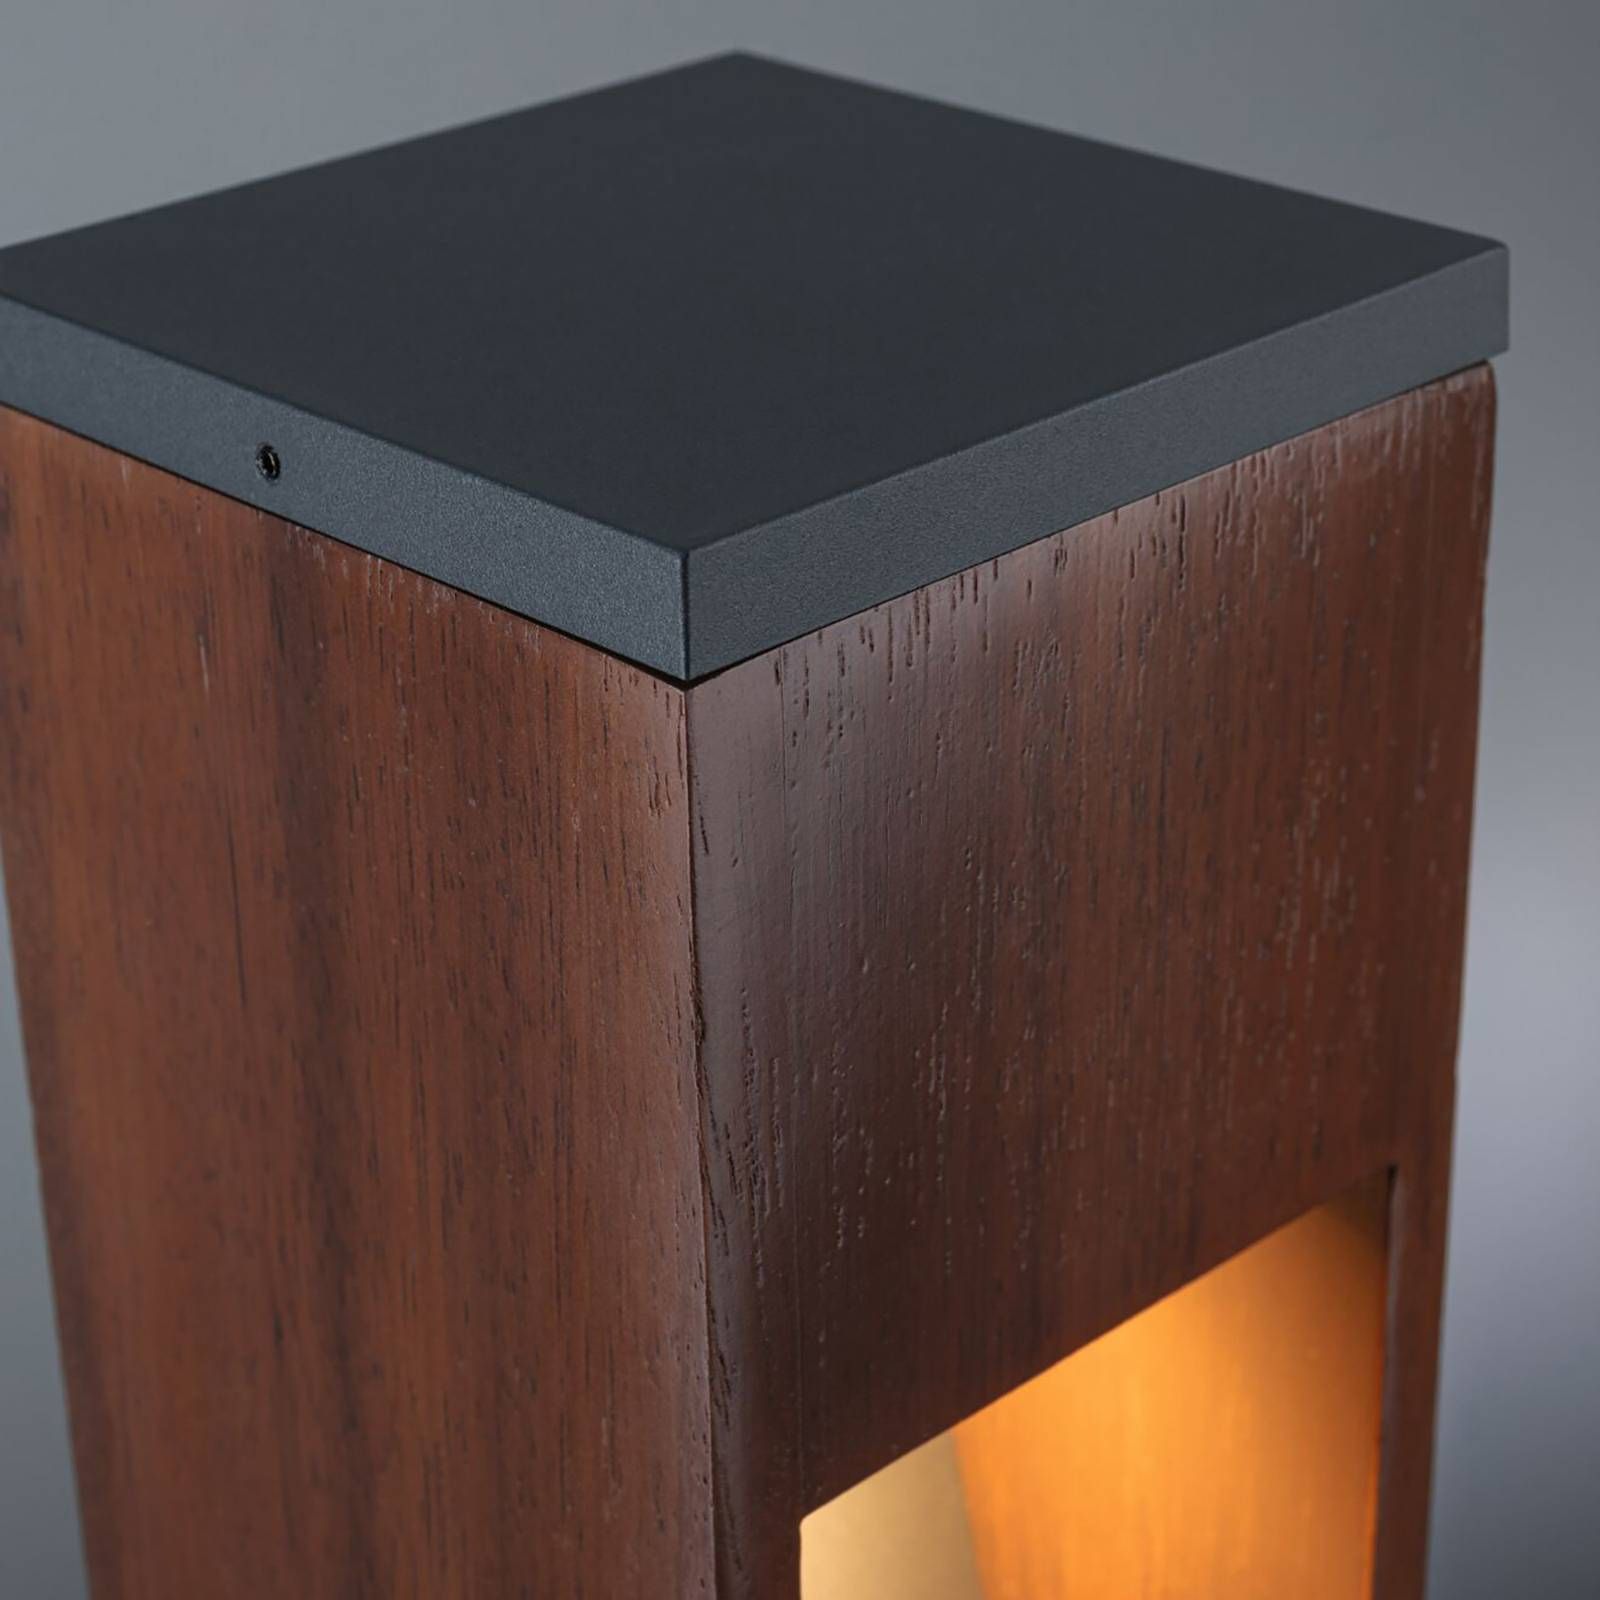 Paulmann Trabia soklové LED drevo, výška 60 cm, kov, drevo, GU10, 3.5W, P: 10 cm, L: 10 cm, K: 60cm